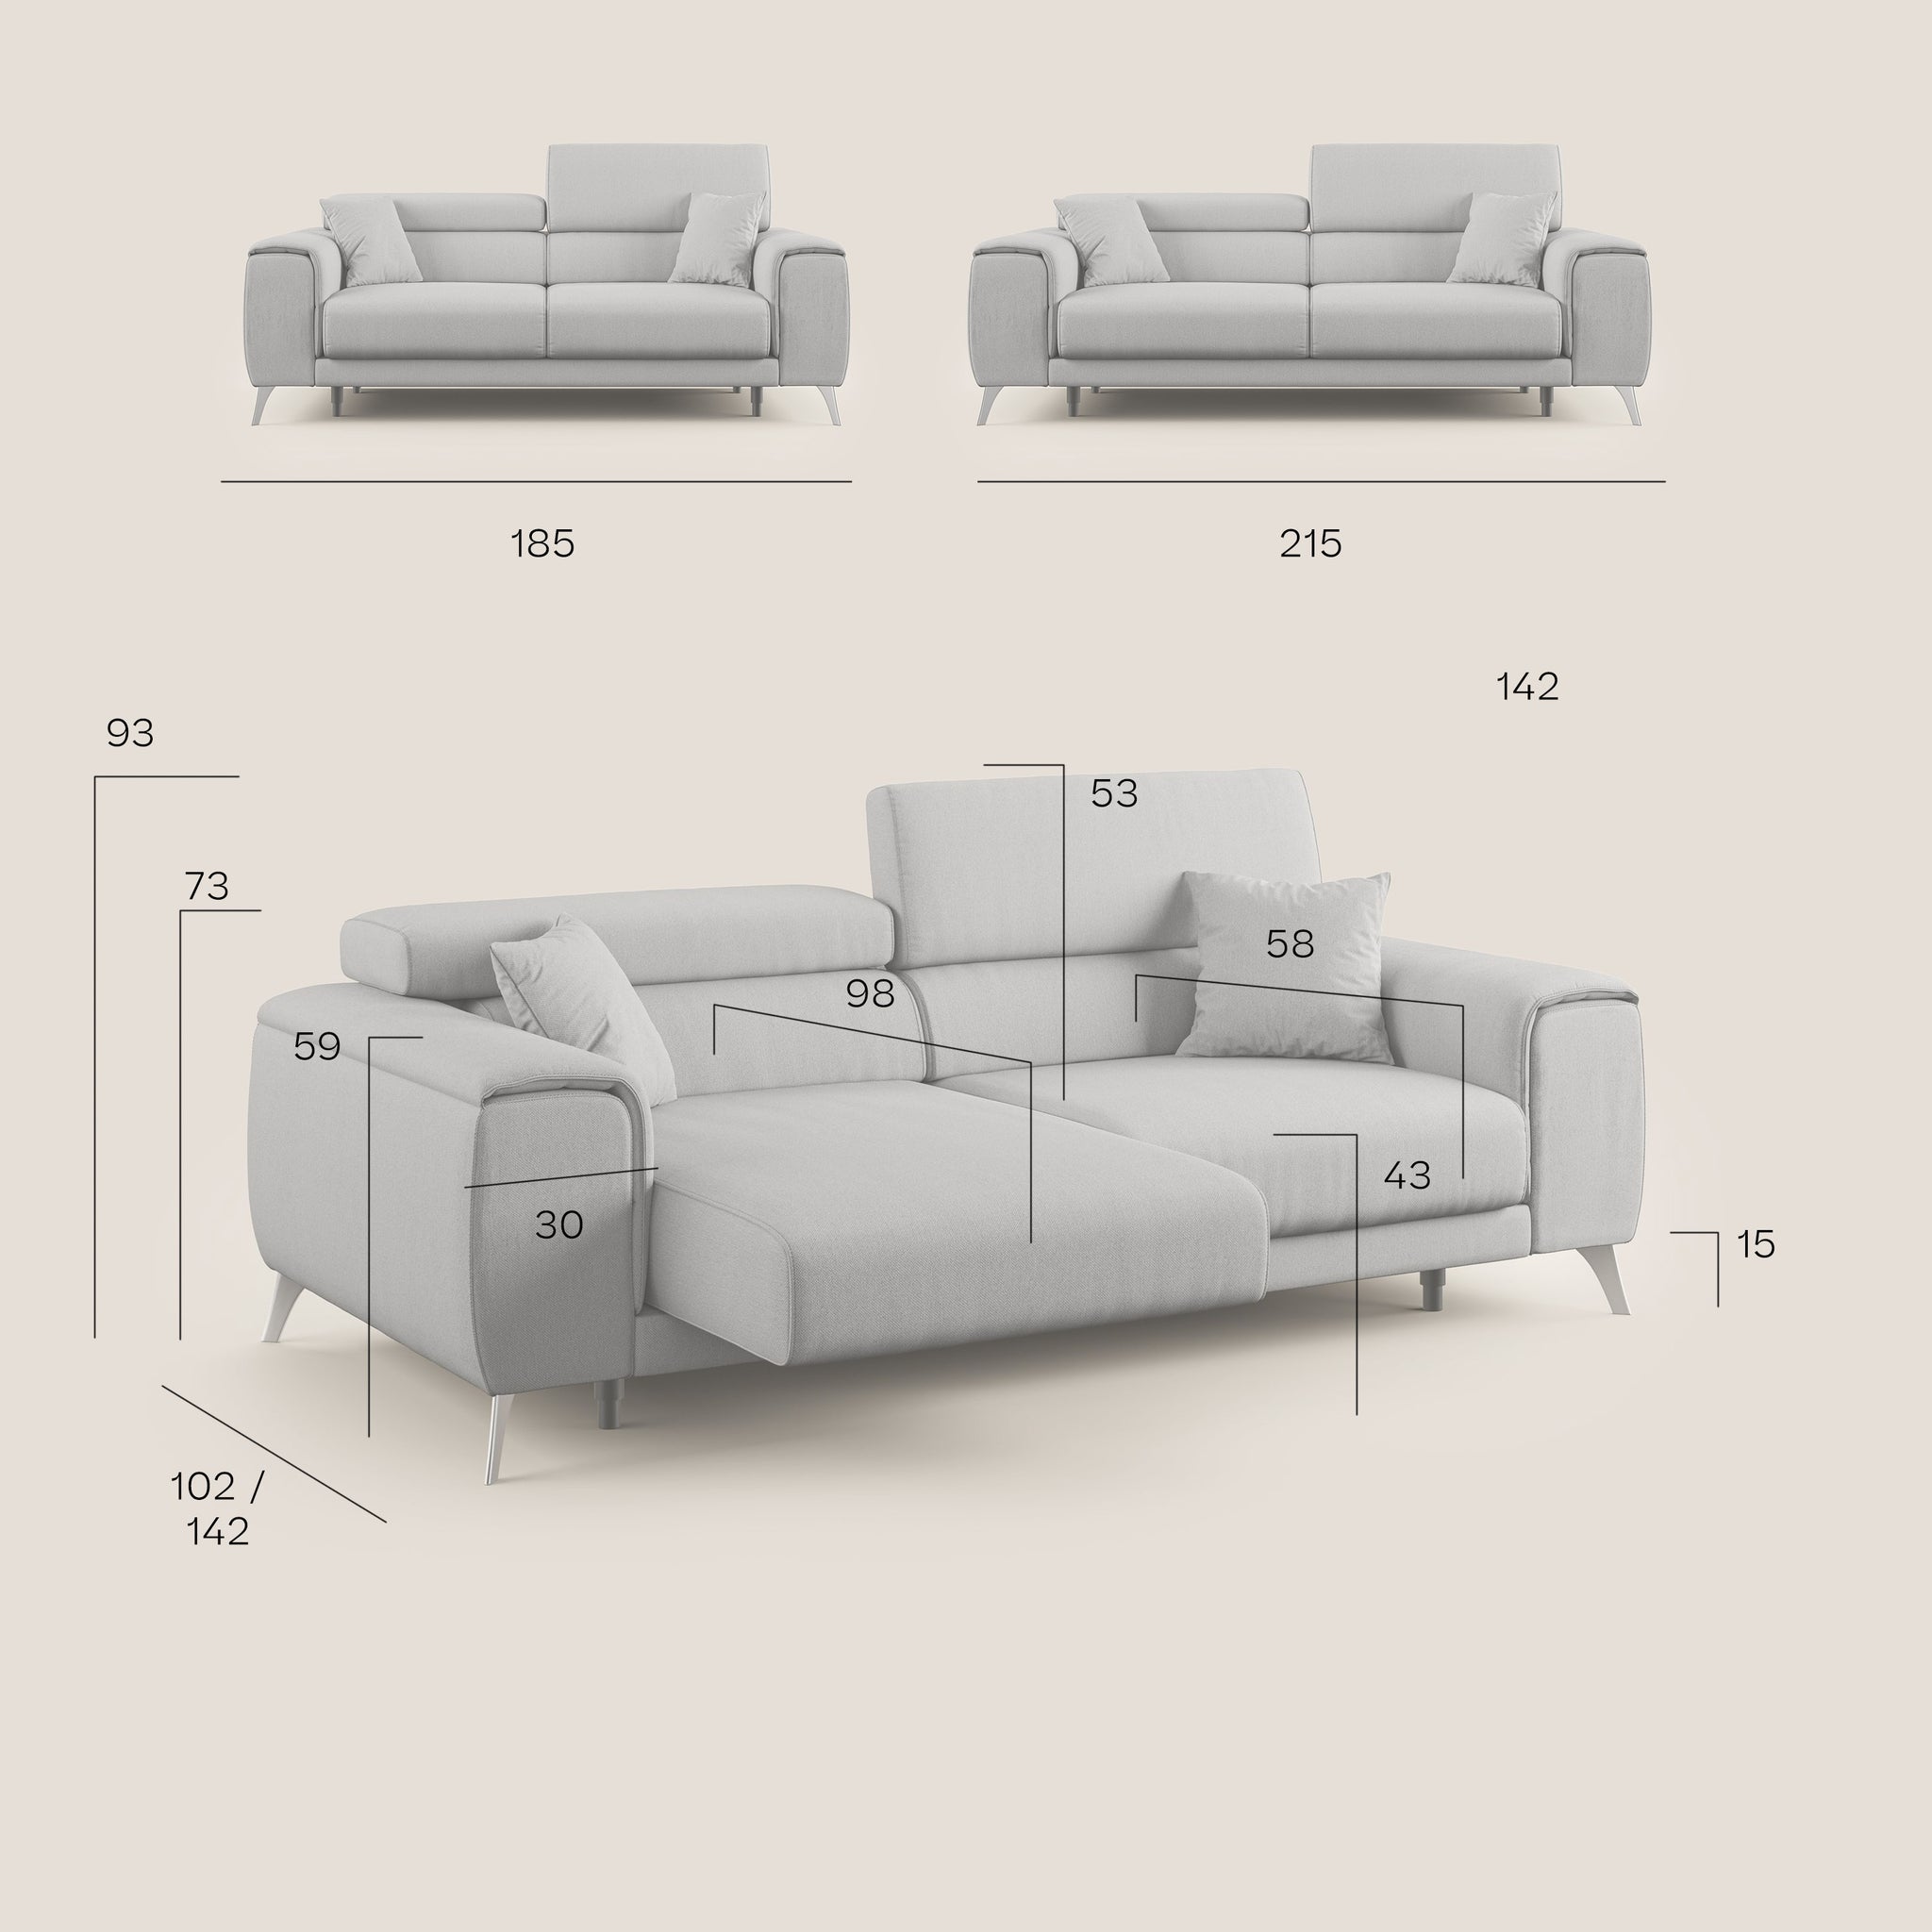 Fusion divano con sedute allungabili in tessuto smacchiabile T05